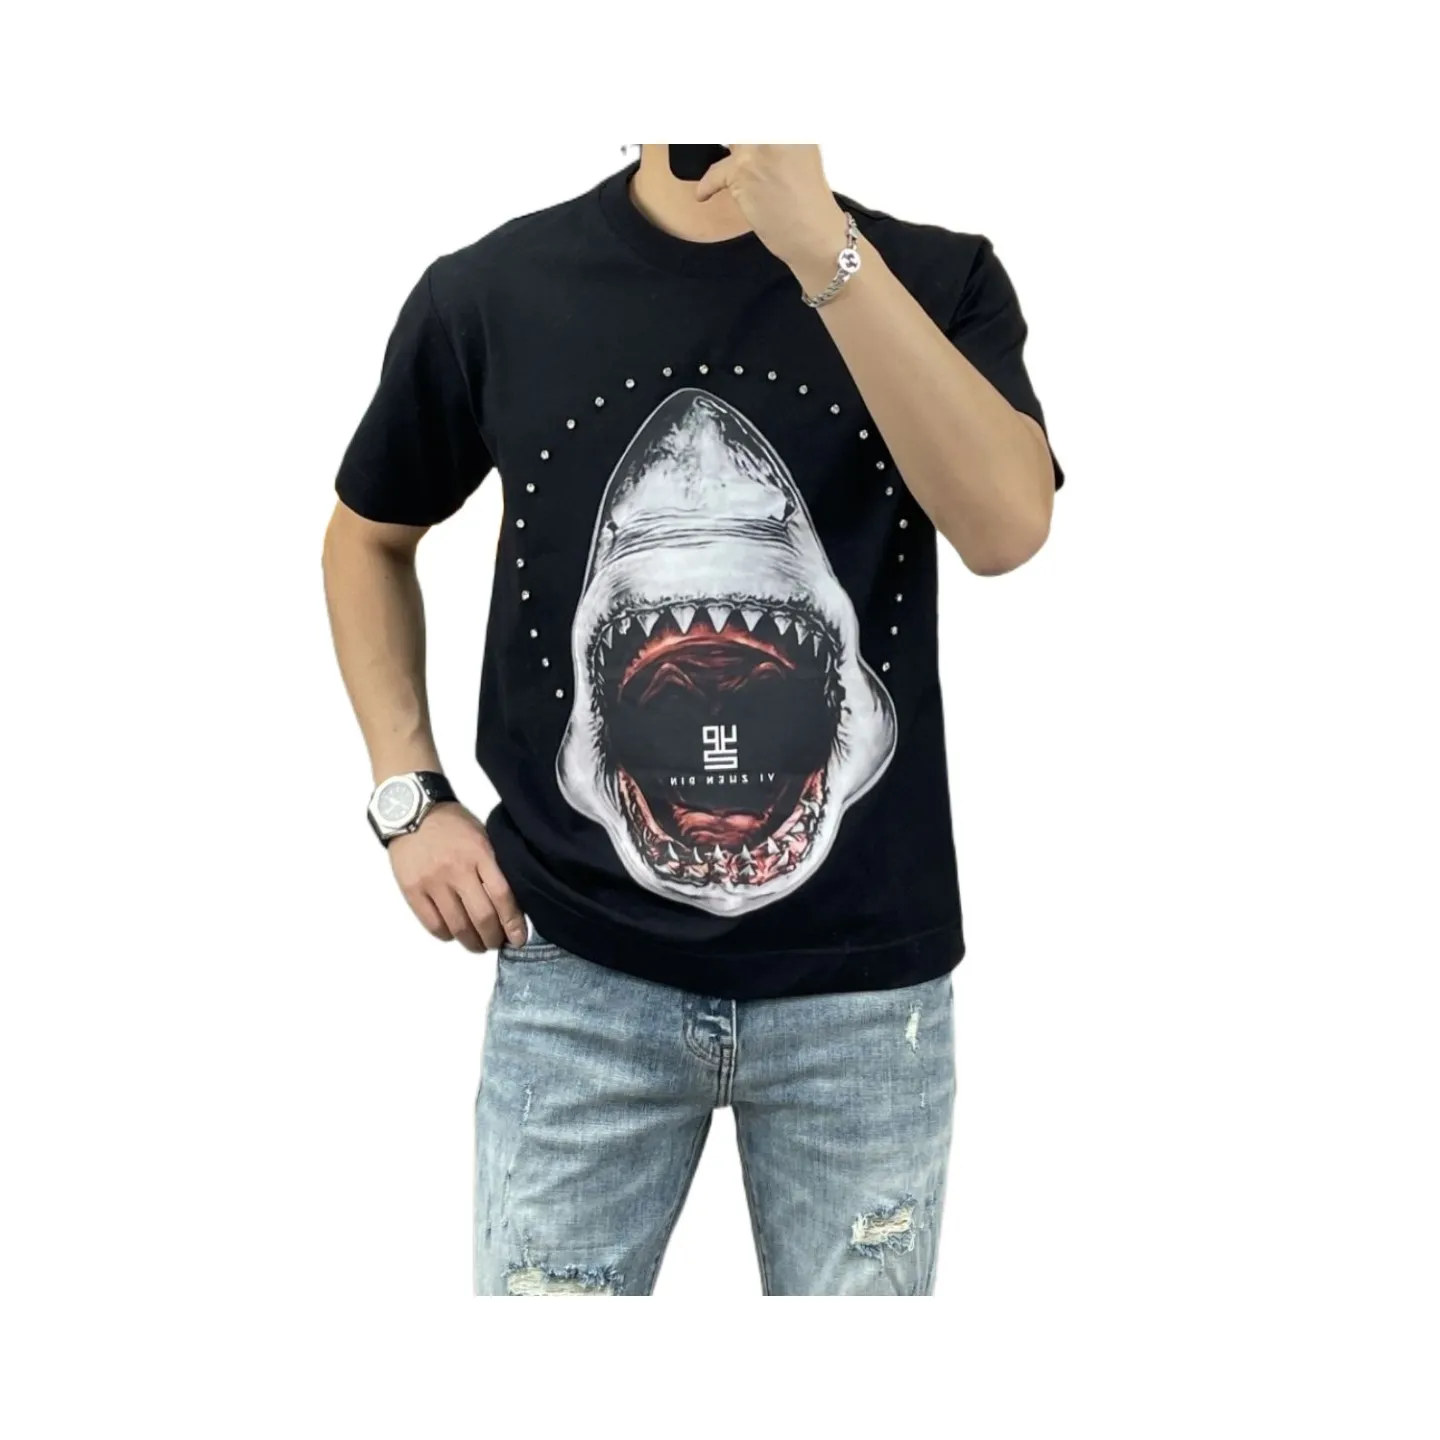 Europäische Neue T-shirt Sommer Shark Print Rundhals Kurzarm männer Lose T-shirt Große Kerl Mode Vielseitig